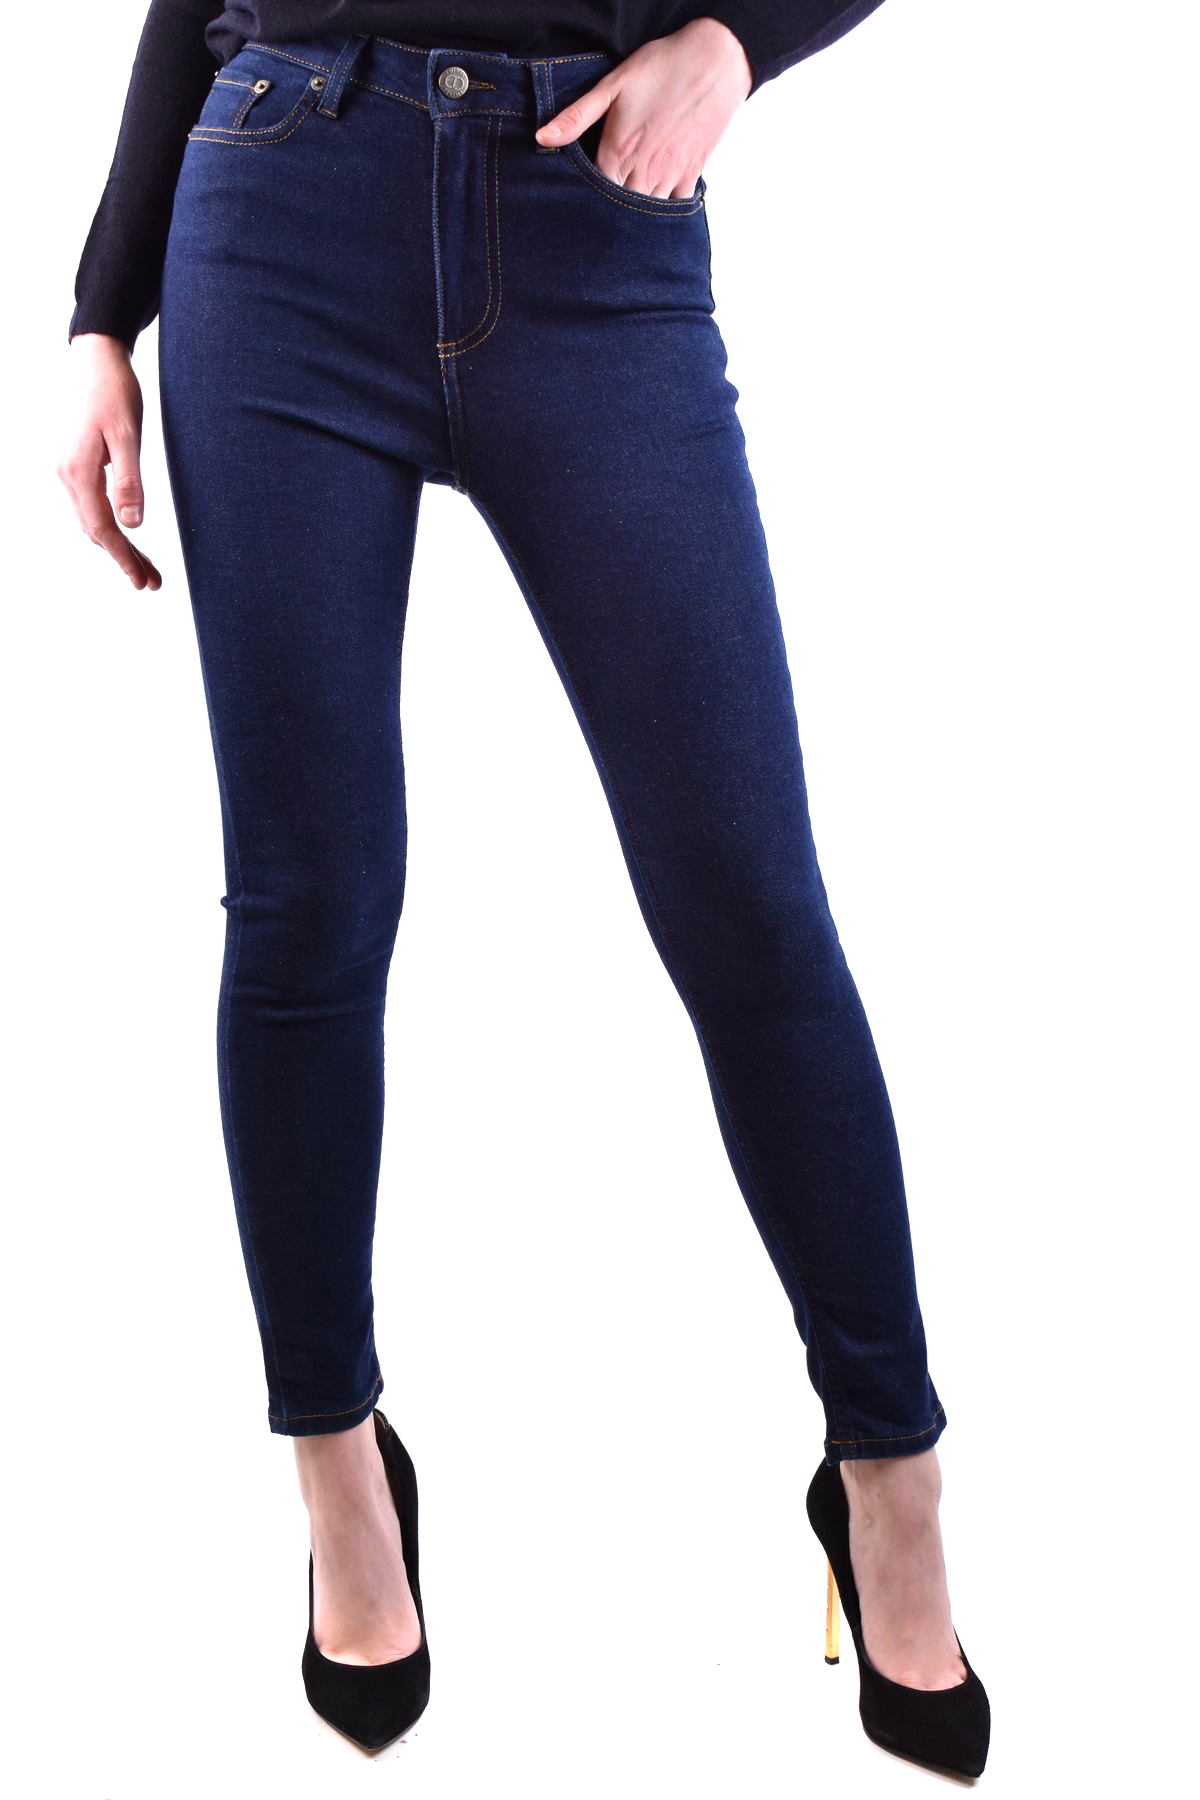 Twin-set Jeans | eBay